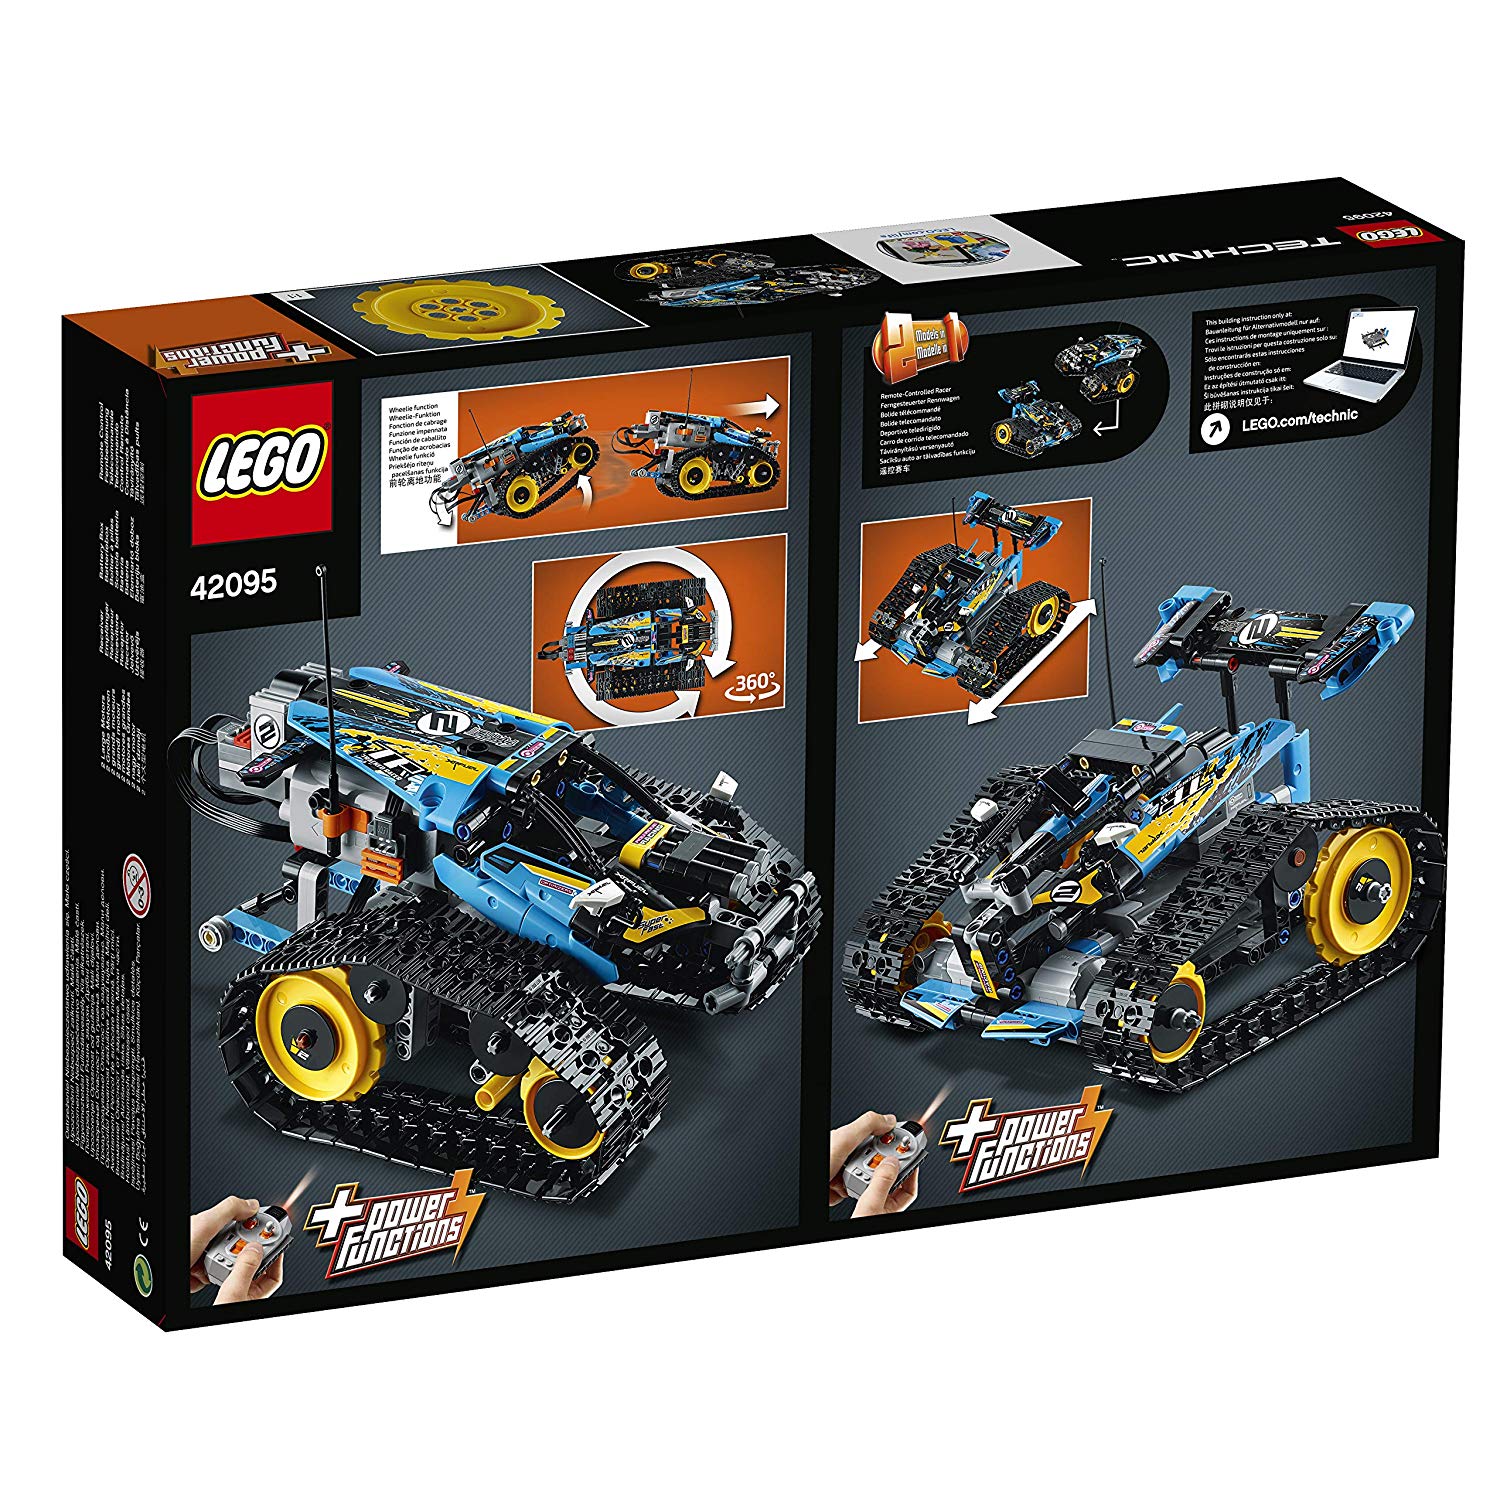 LEGO Technic - Le bolide télécommandé - 42095 - Jeu de construction